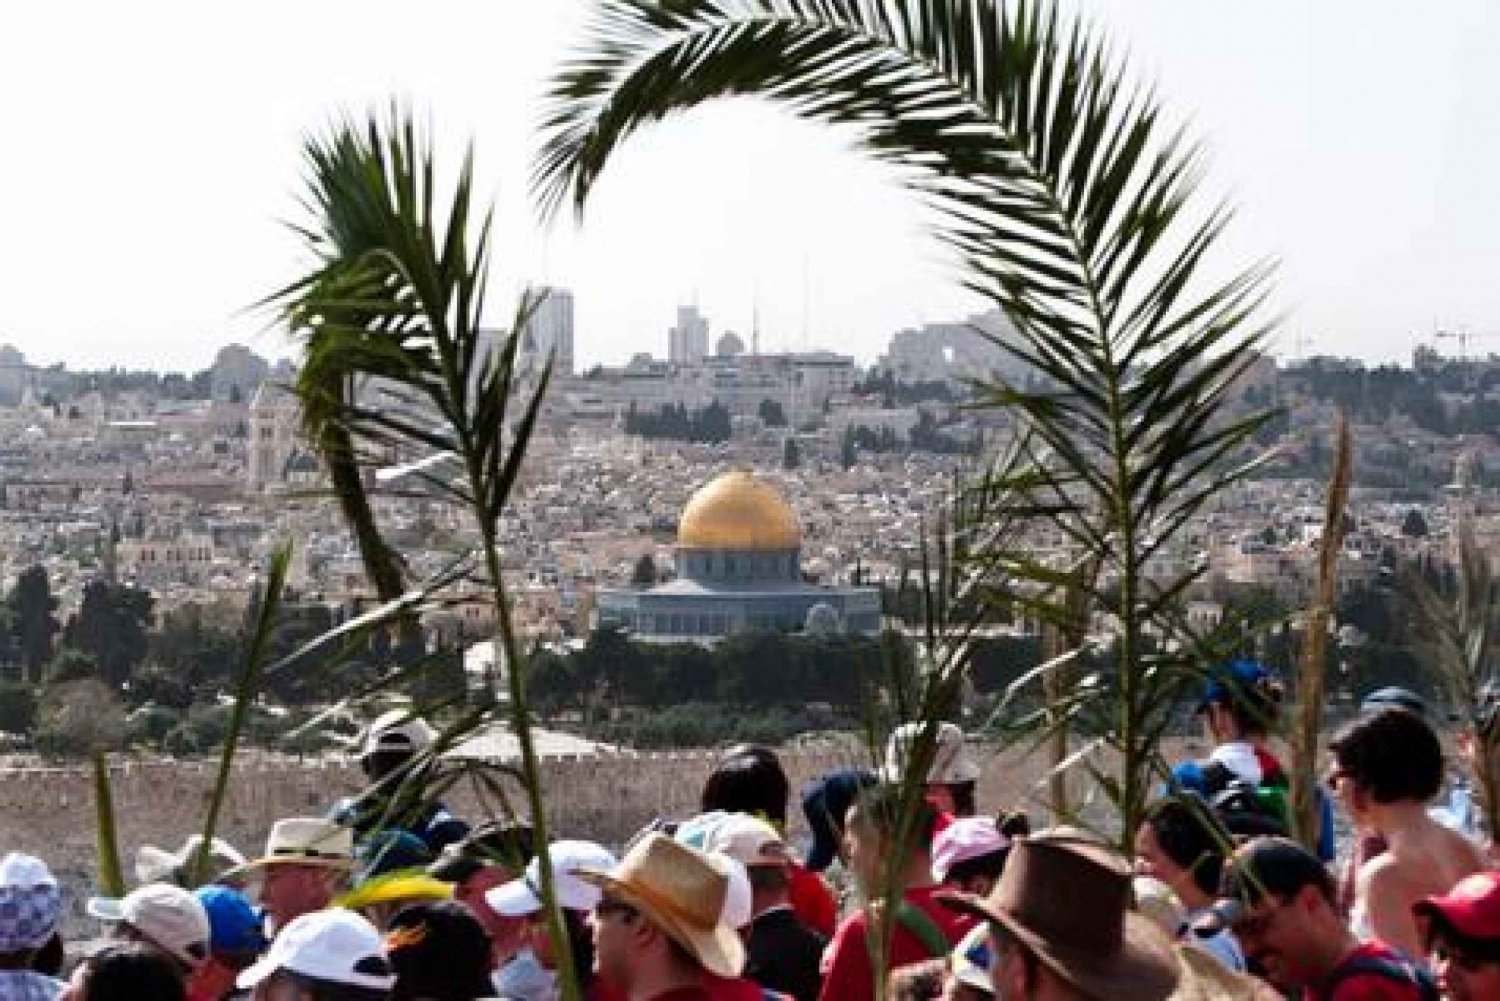 Domingo de Ramos desde Jerusalén o Tel Aviv